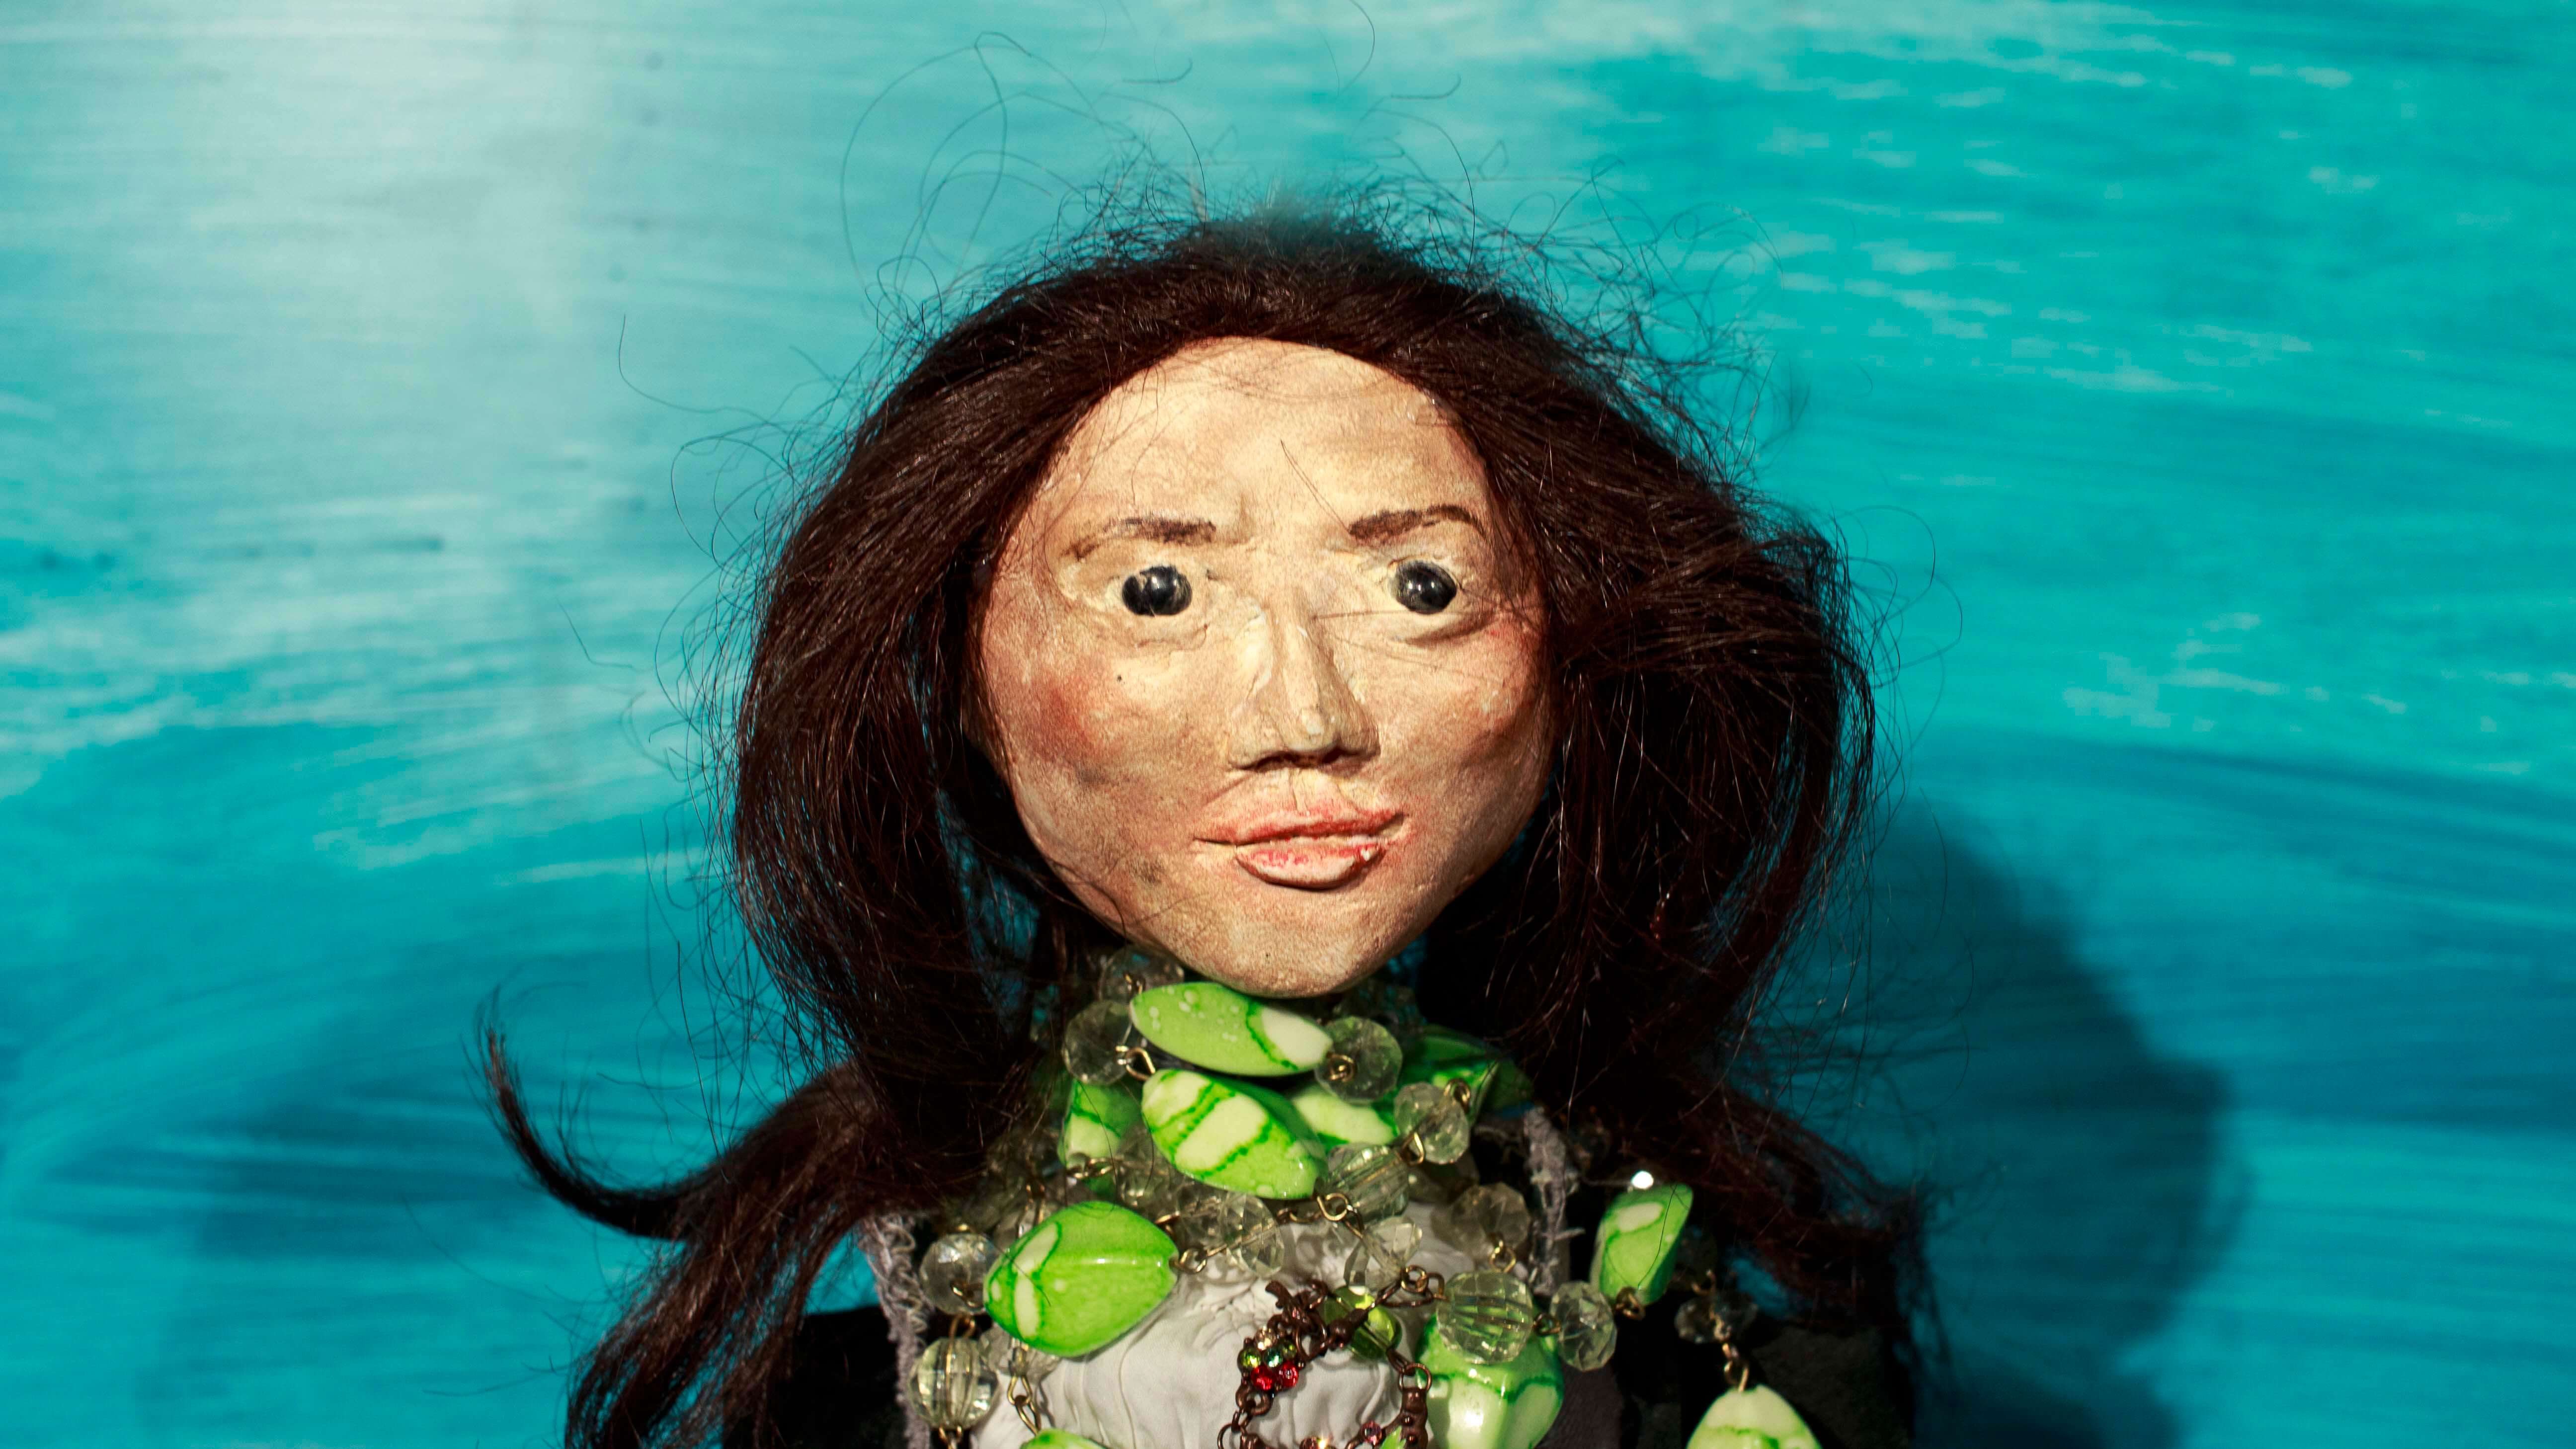 zbliżenie na twarz lalki przedstawiającej kobietę o ciemnych rozpuszczonych włosach, czarnych oczach, z zielonymi i przezroczystymi koralami wokół szyi, niebieskie tło